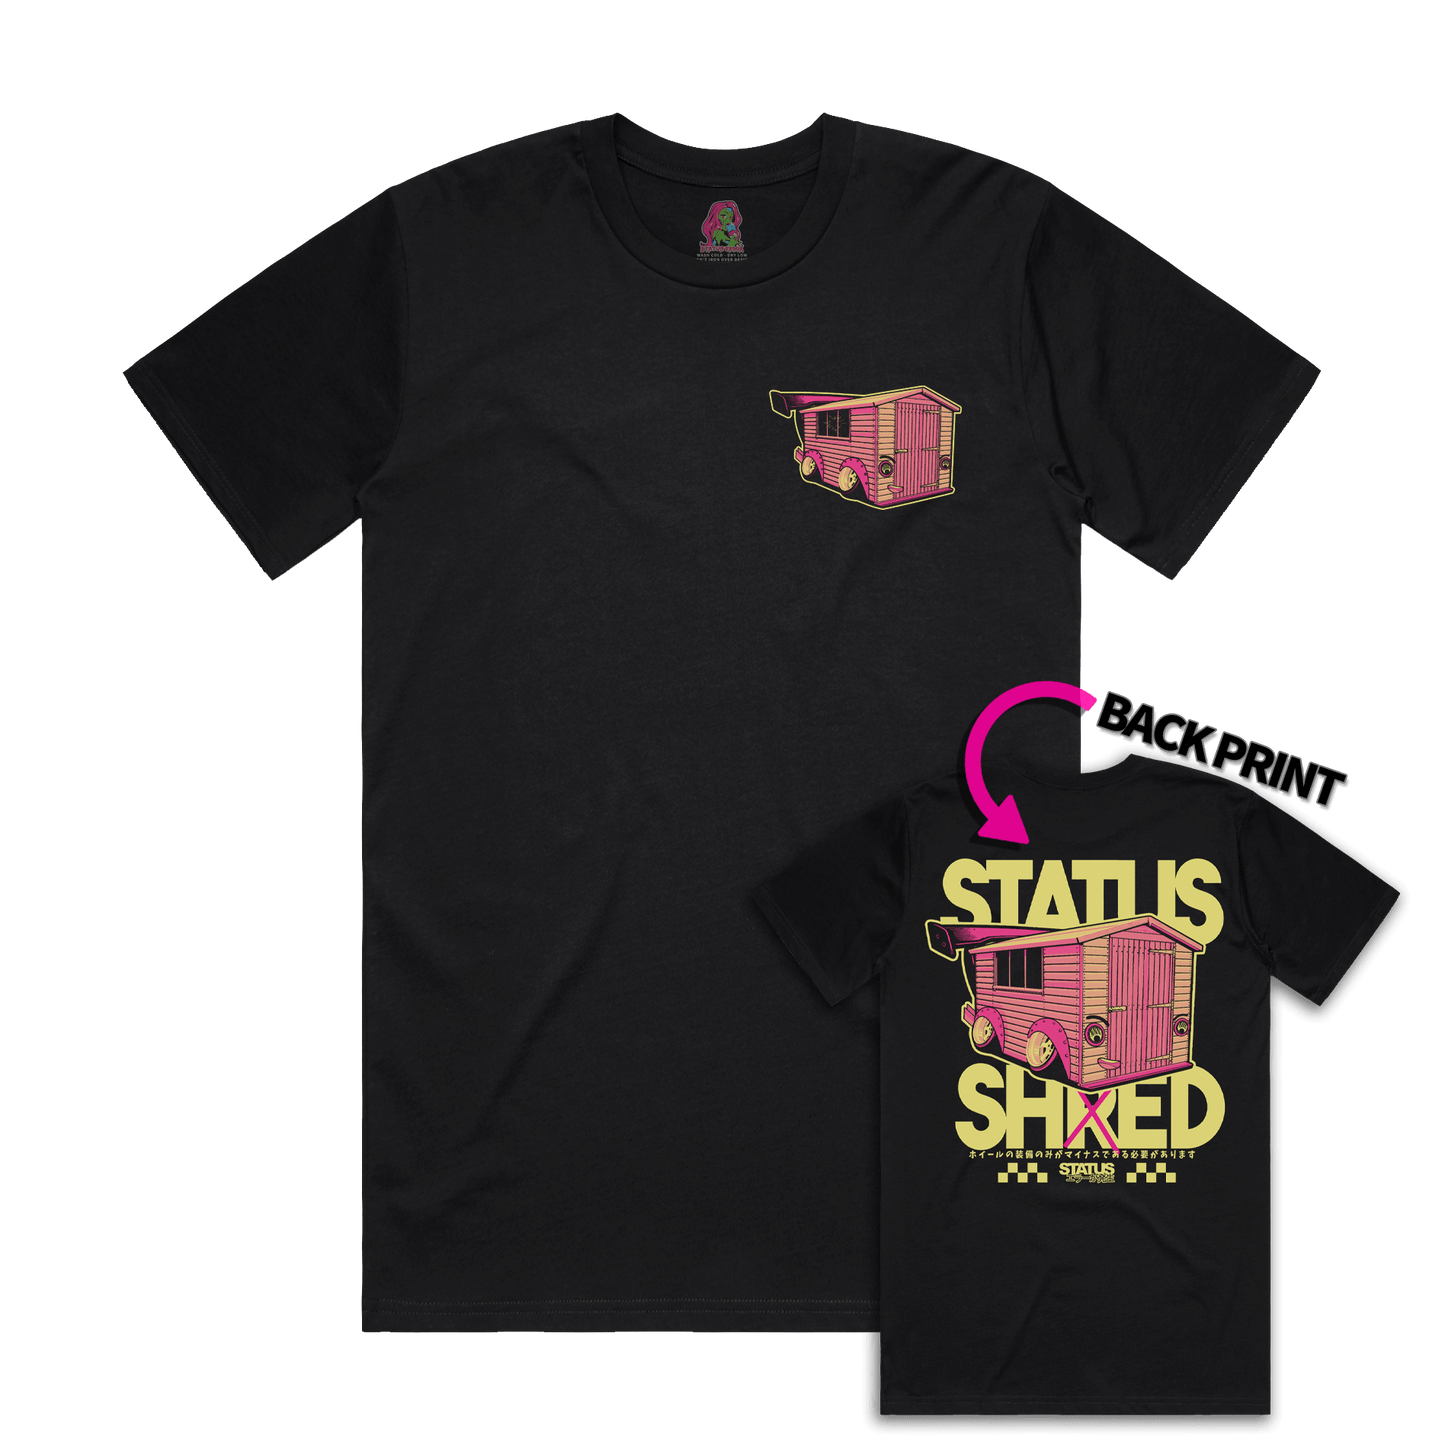 Status Error Status Shed T-Shirt